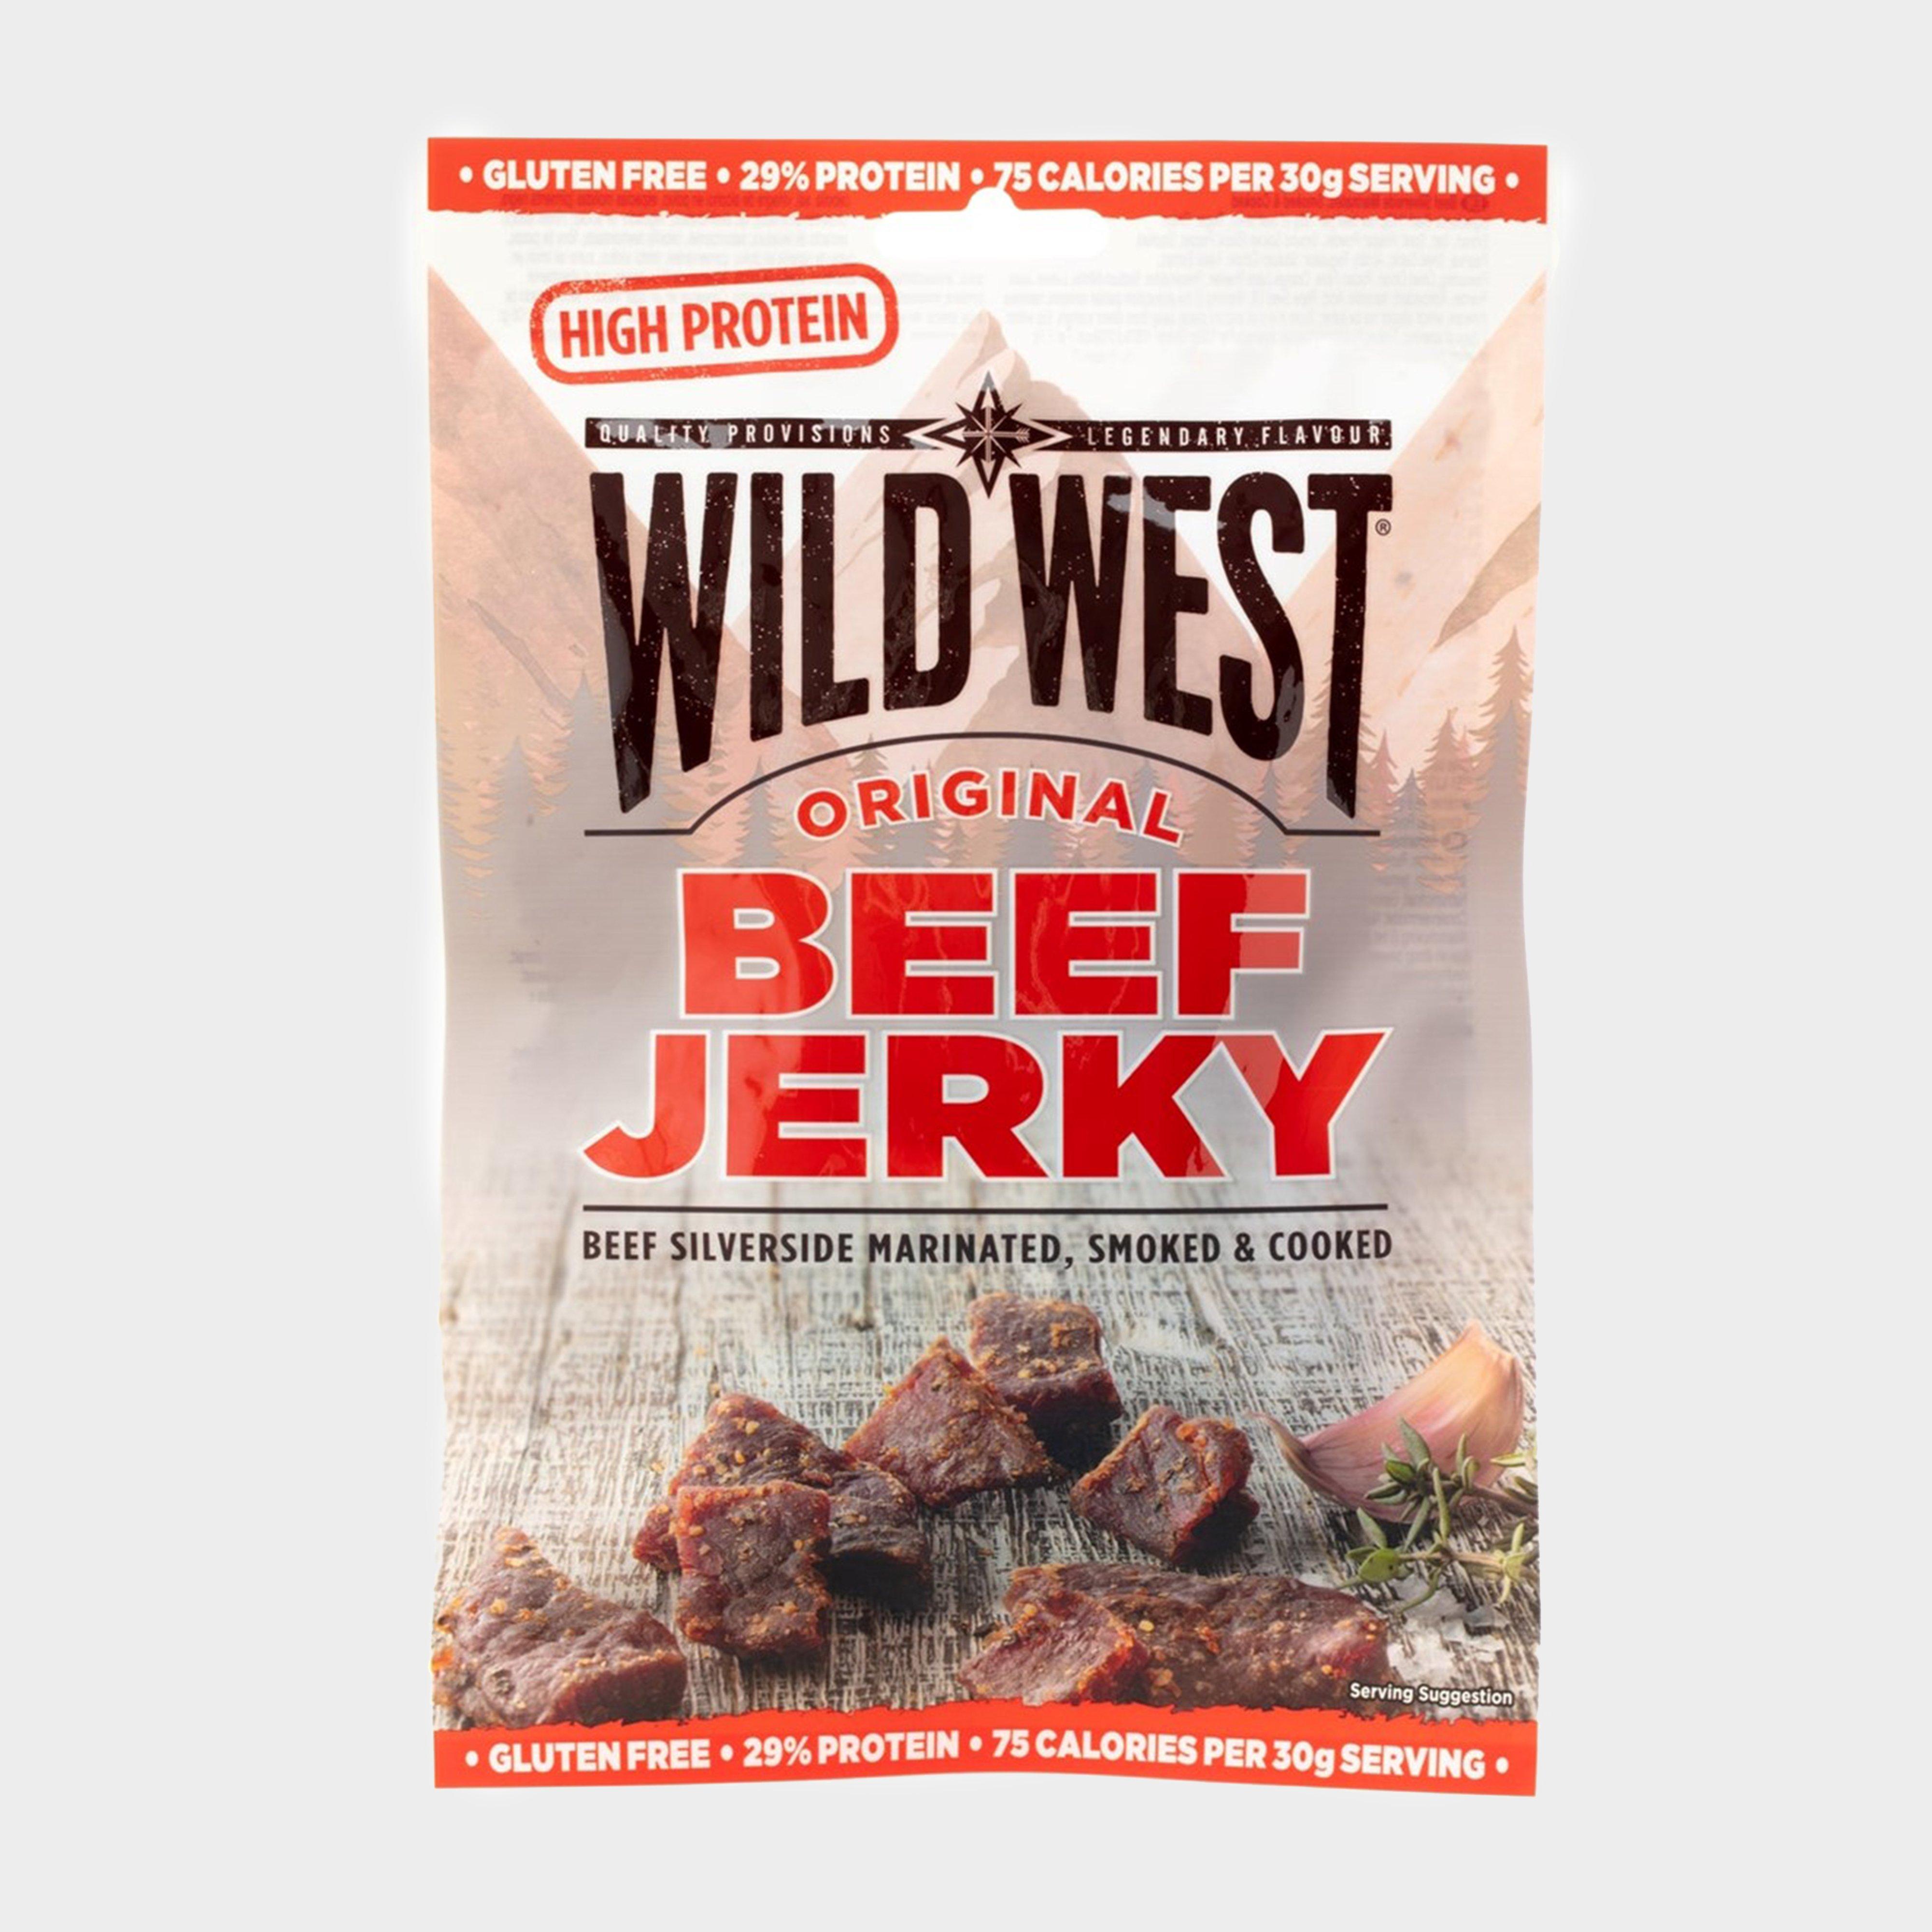 Go Outdoors Wild west Original Beef Jerky, Red